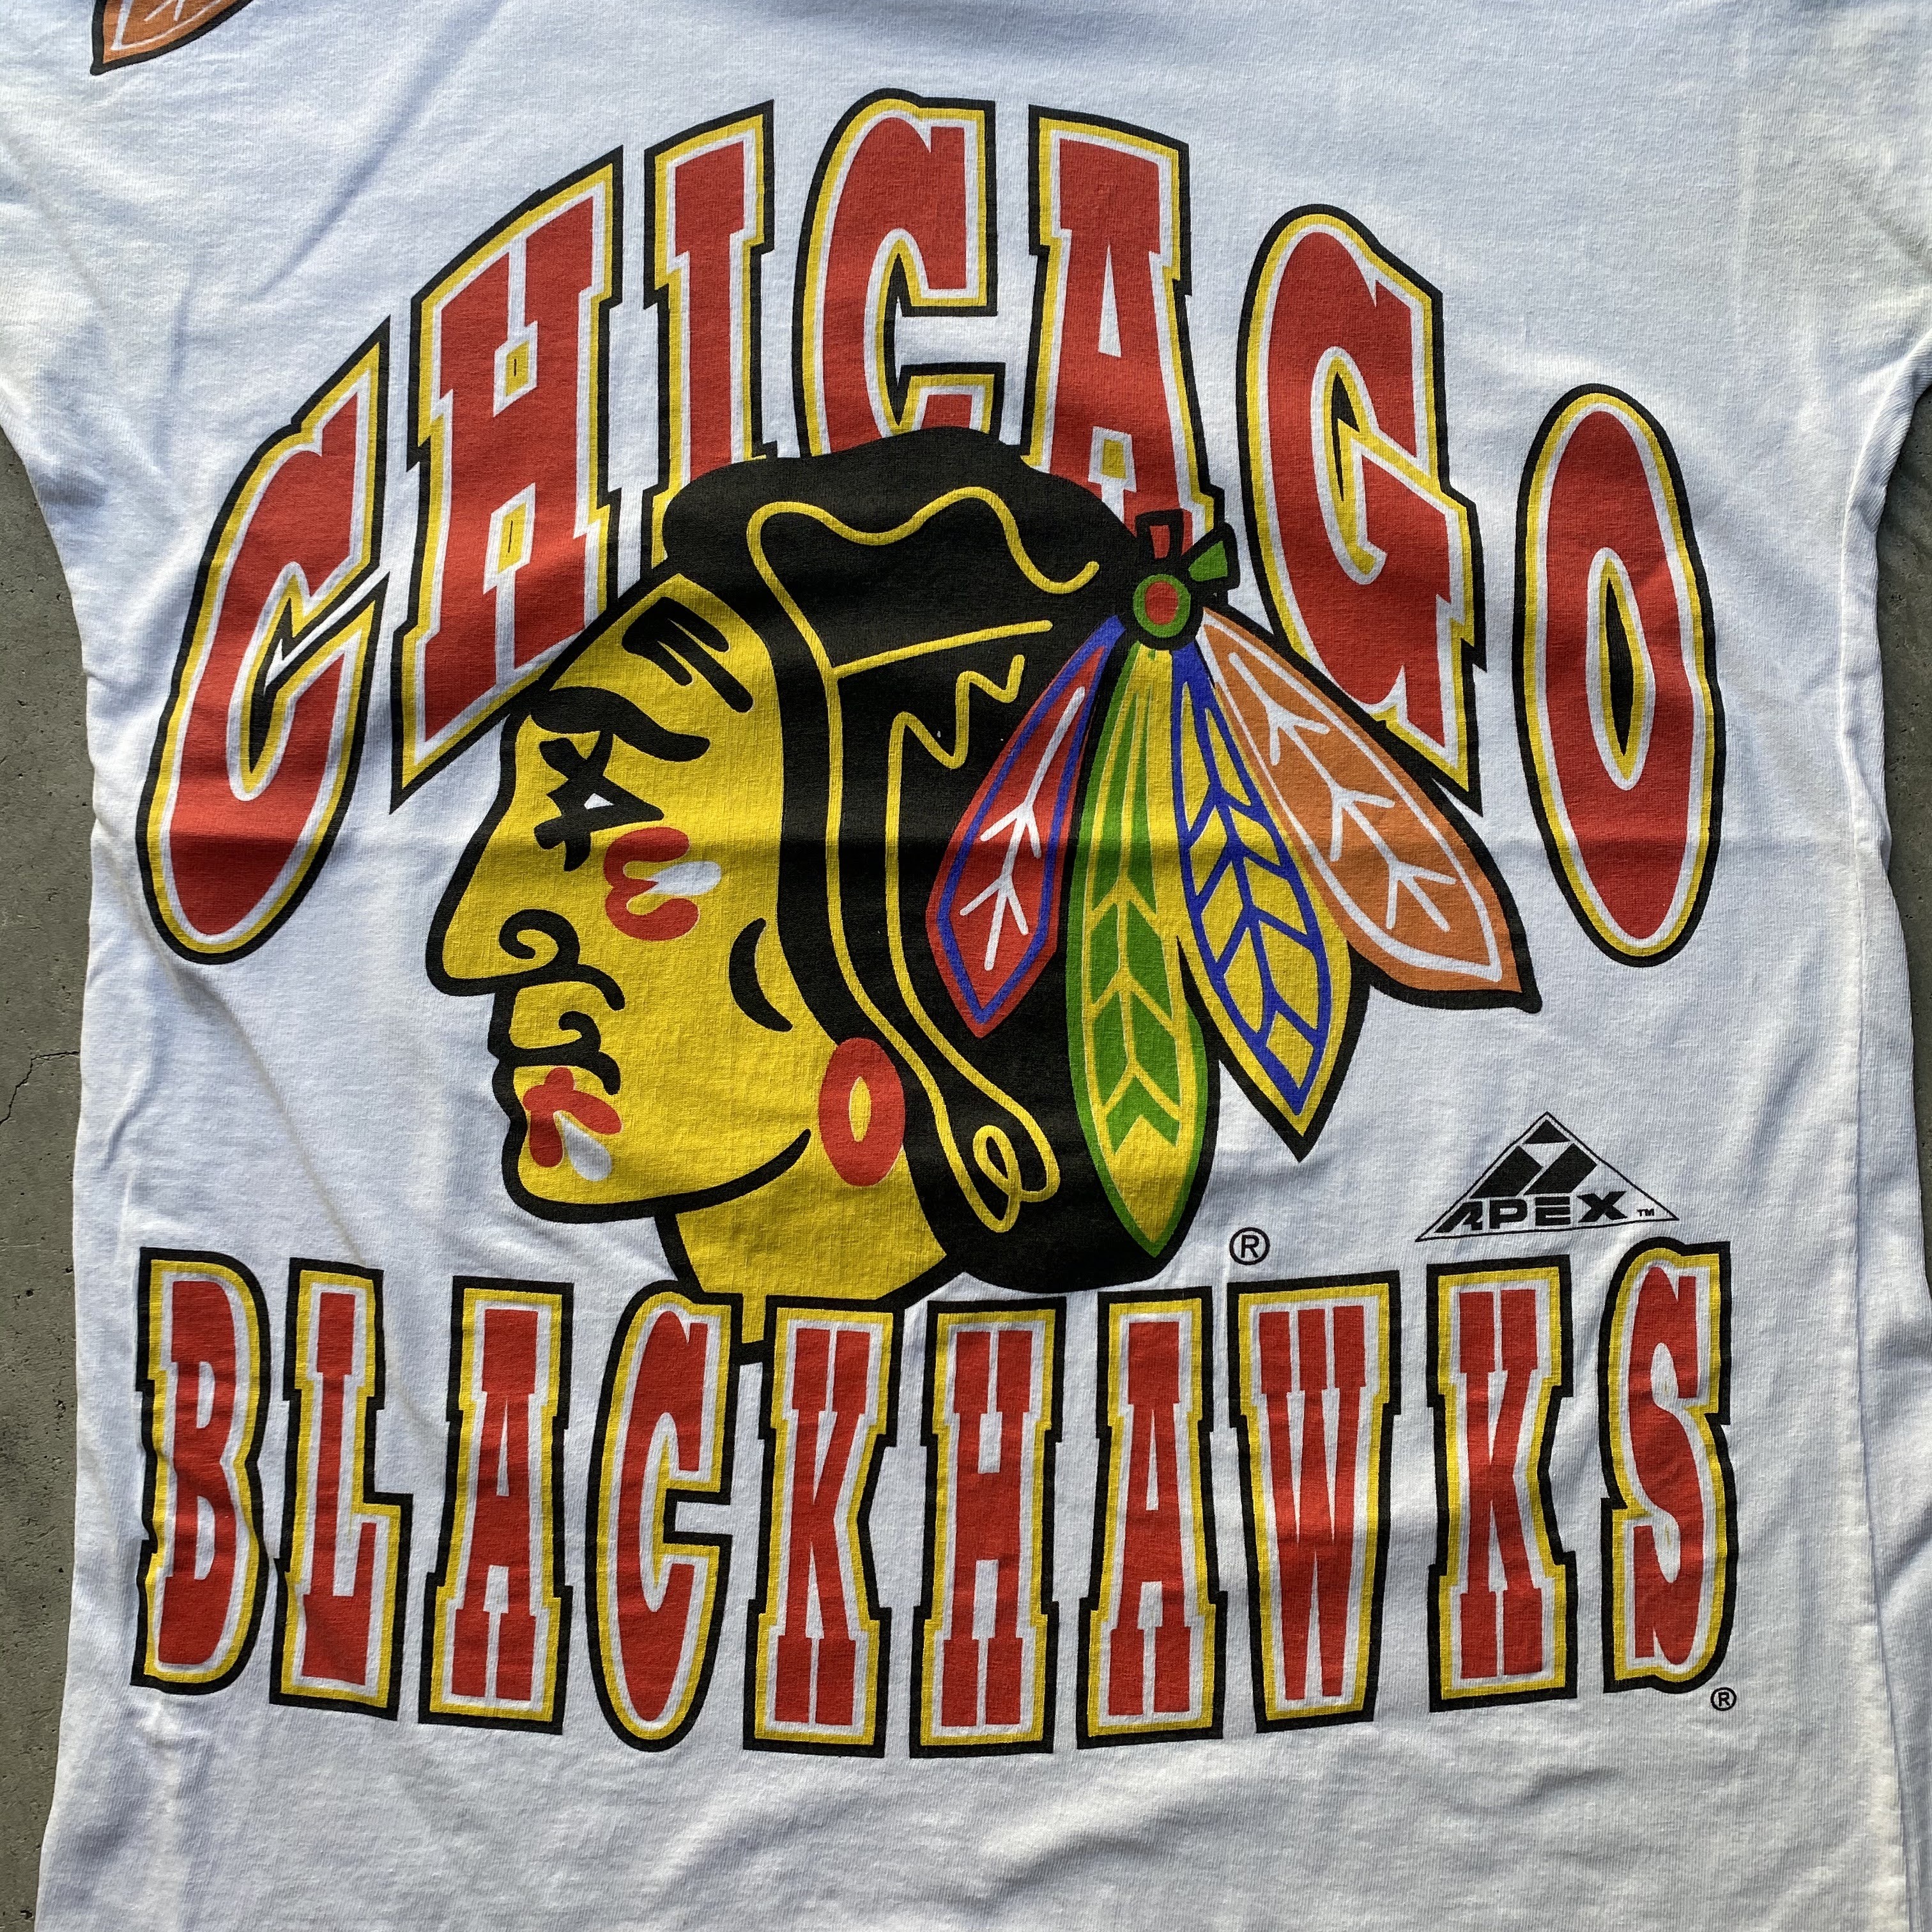 Nhl Chicago Blackhawks シカゴブラックホークス ホッケーtシャツ メンズm 古着 Tシャツ Cave 古着屋 公式 古着通販サイト